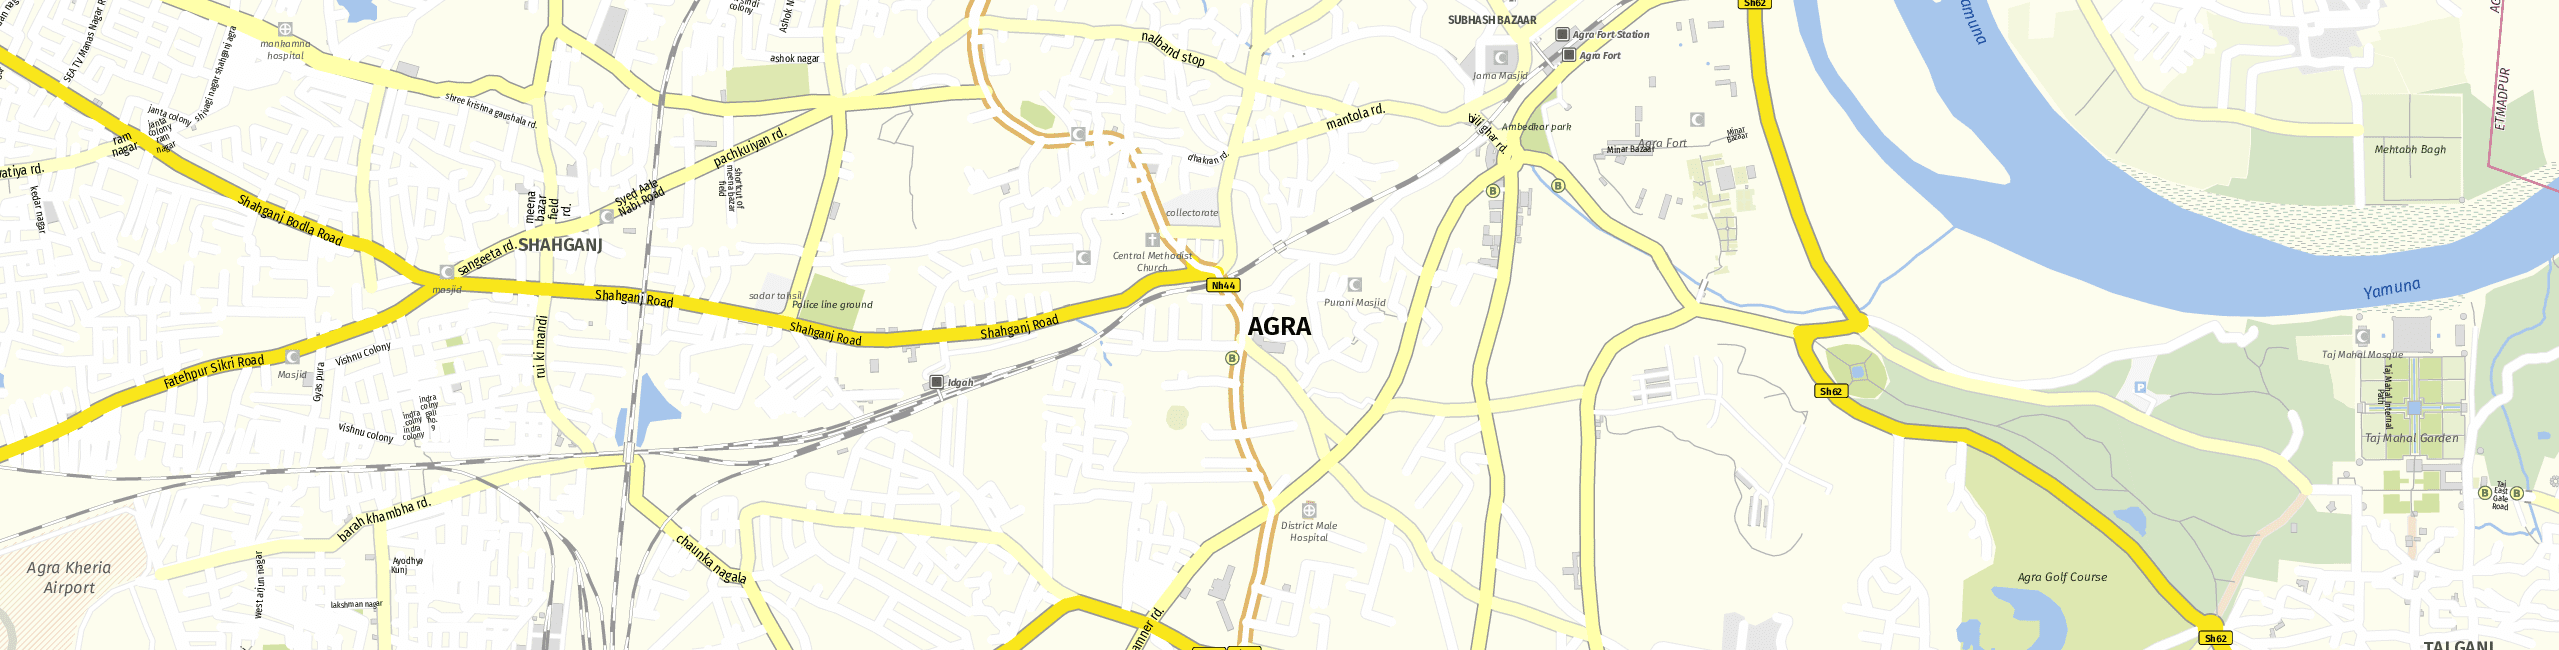 Stadtplan Agra zum Downloaden.